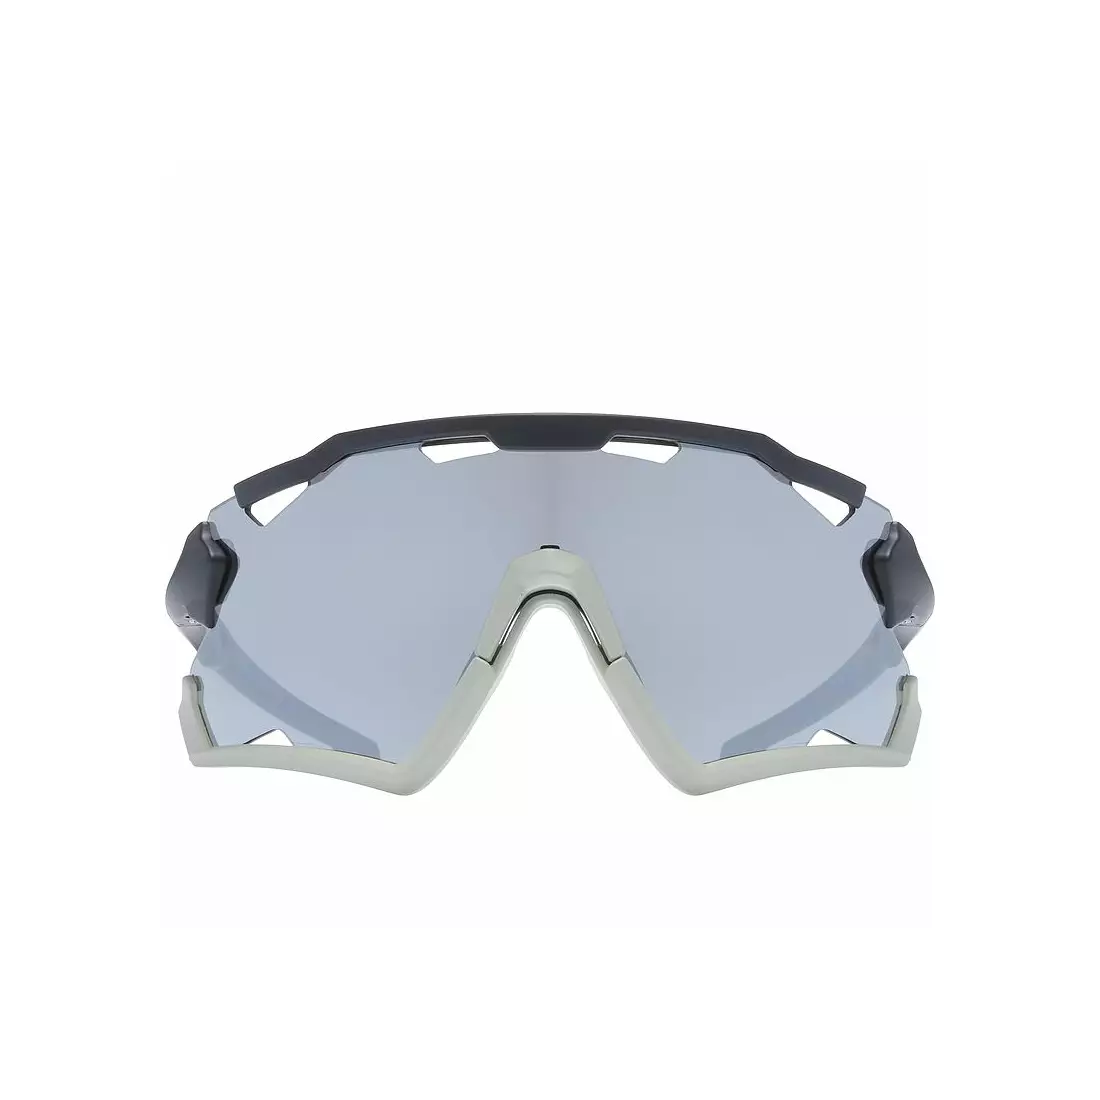 UVEX sportszemüveg Sportstyle 228 tükörezüst (S3), fekete-szürke